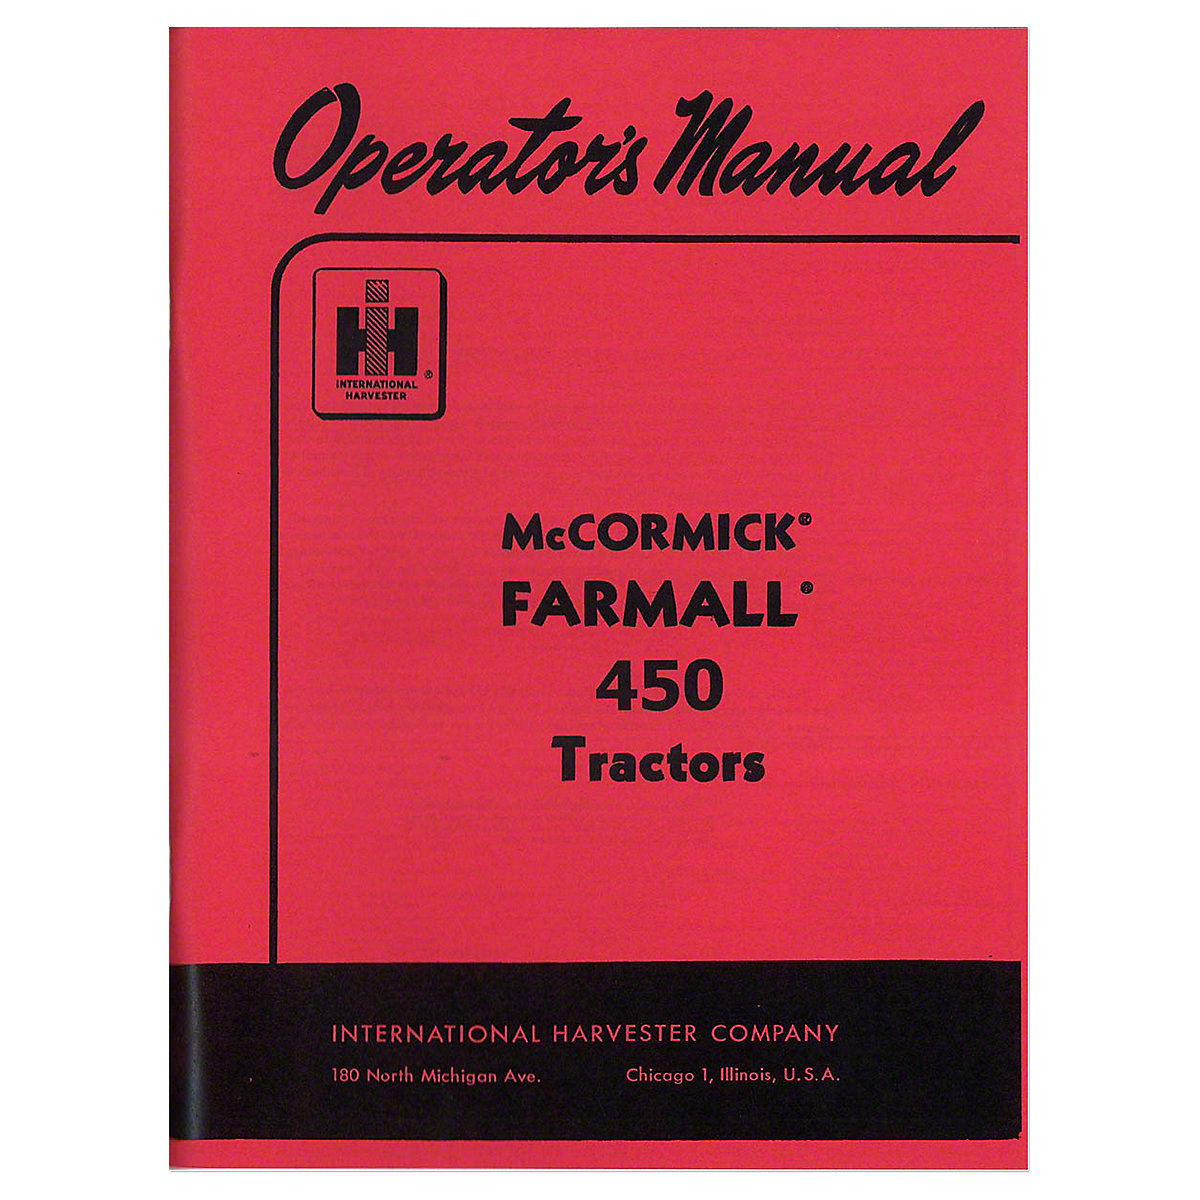 REP103 - OPERATORS MANUAL: FARMALL 450